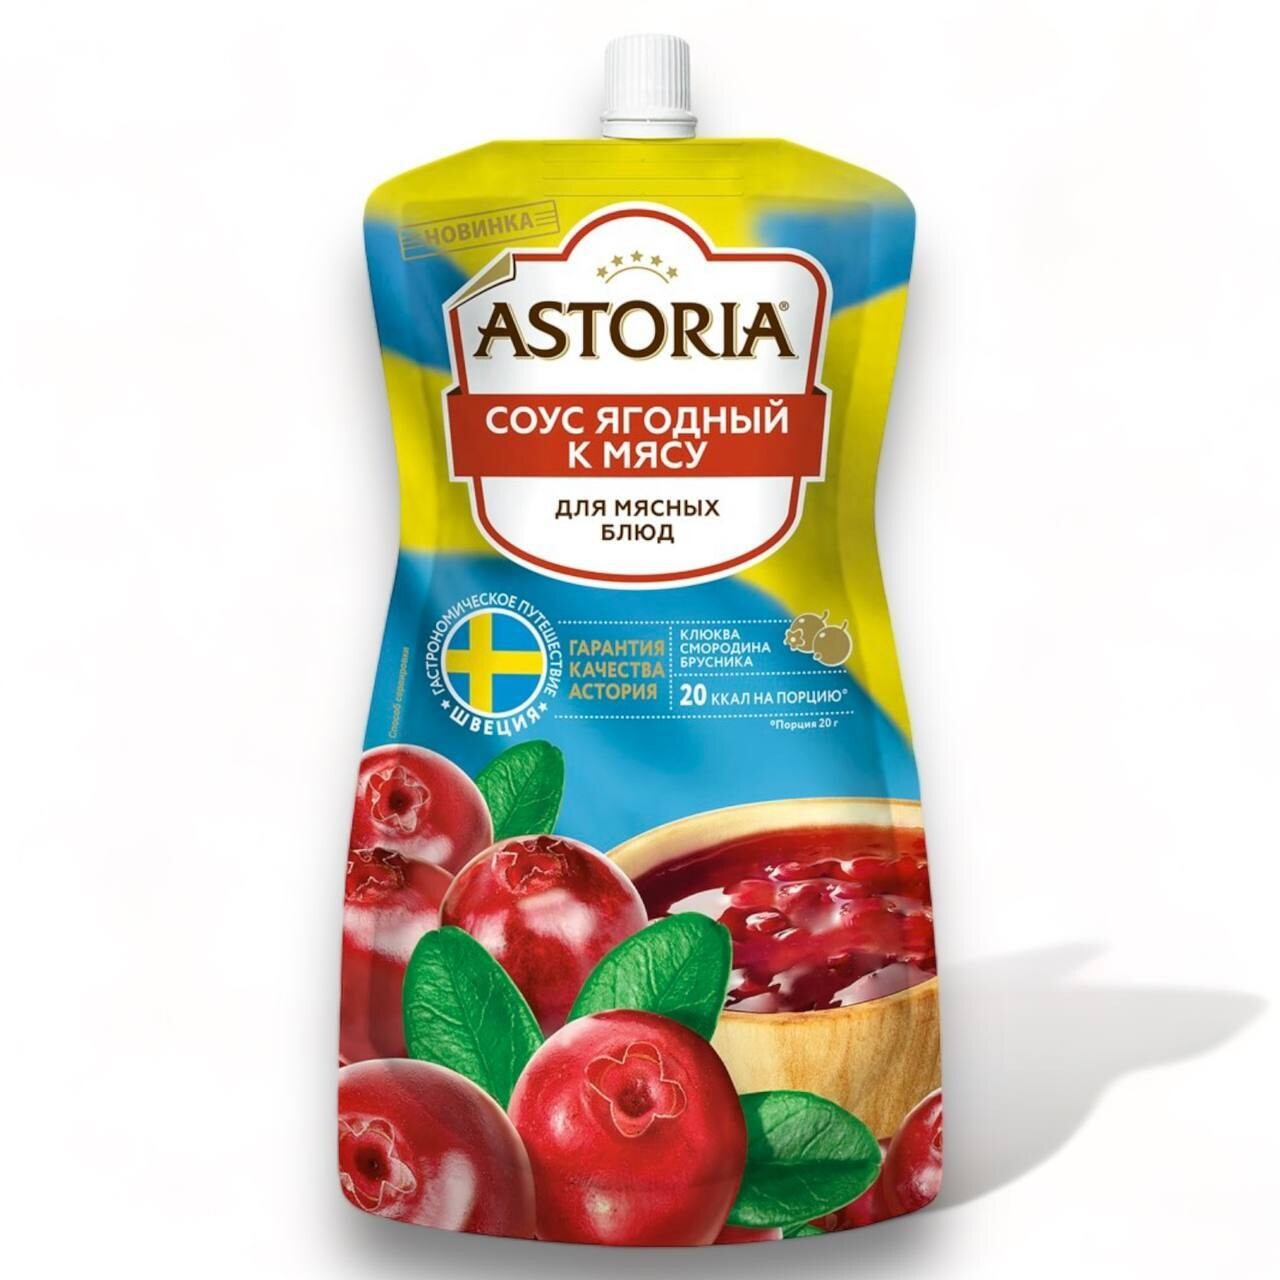 Astoria Berry Sauce (7oz) 200g.